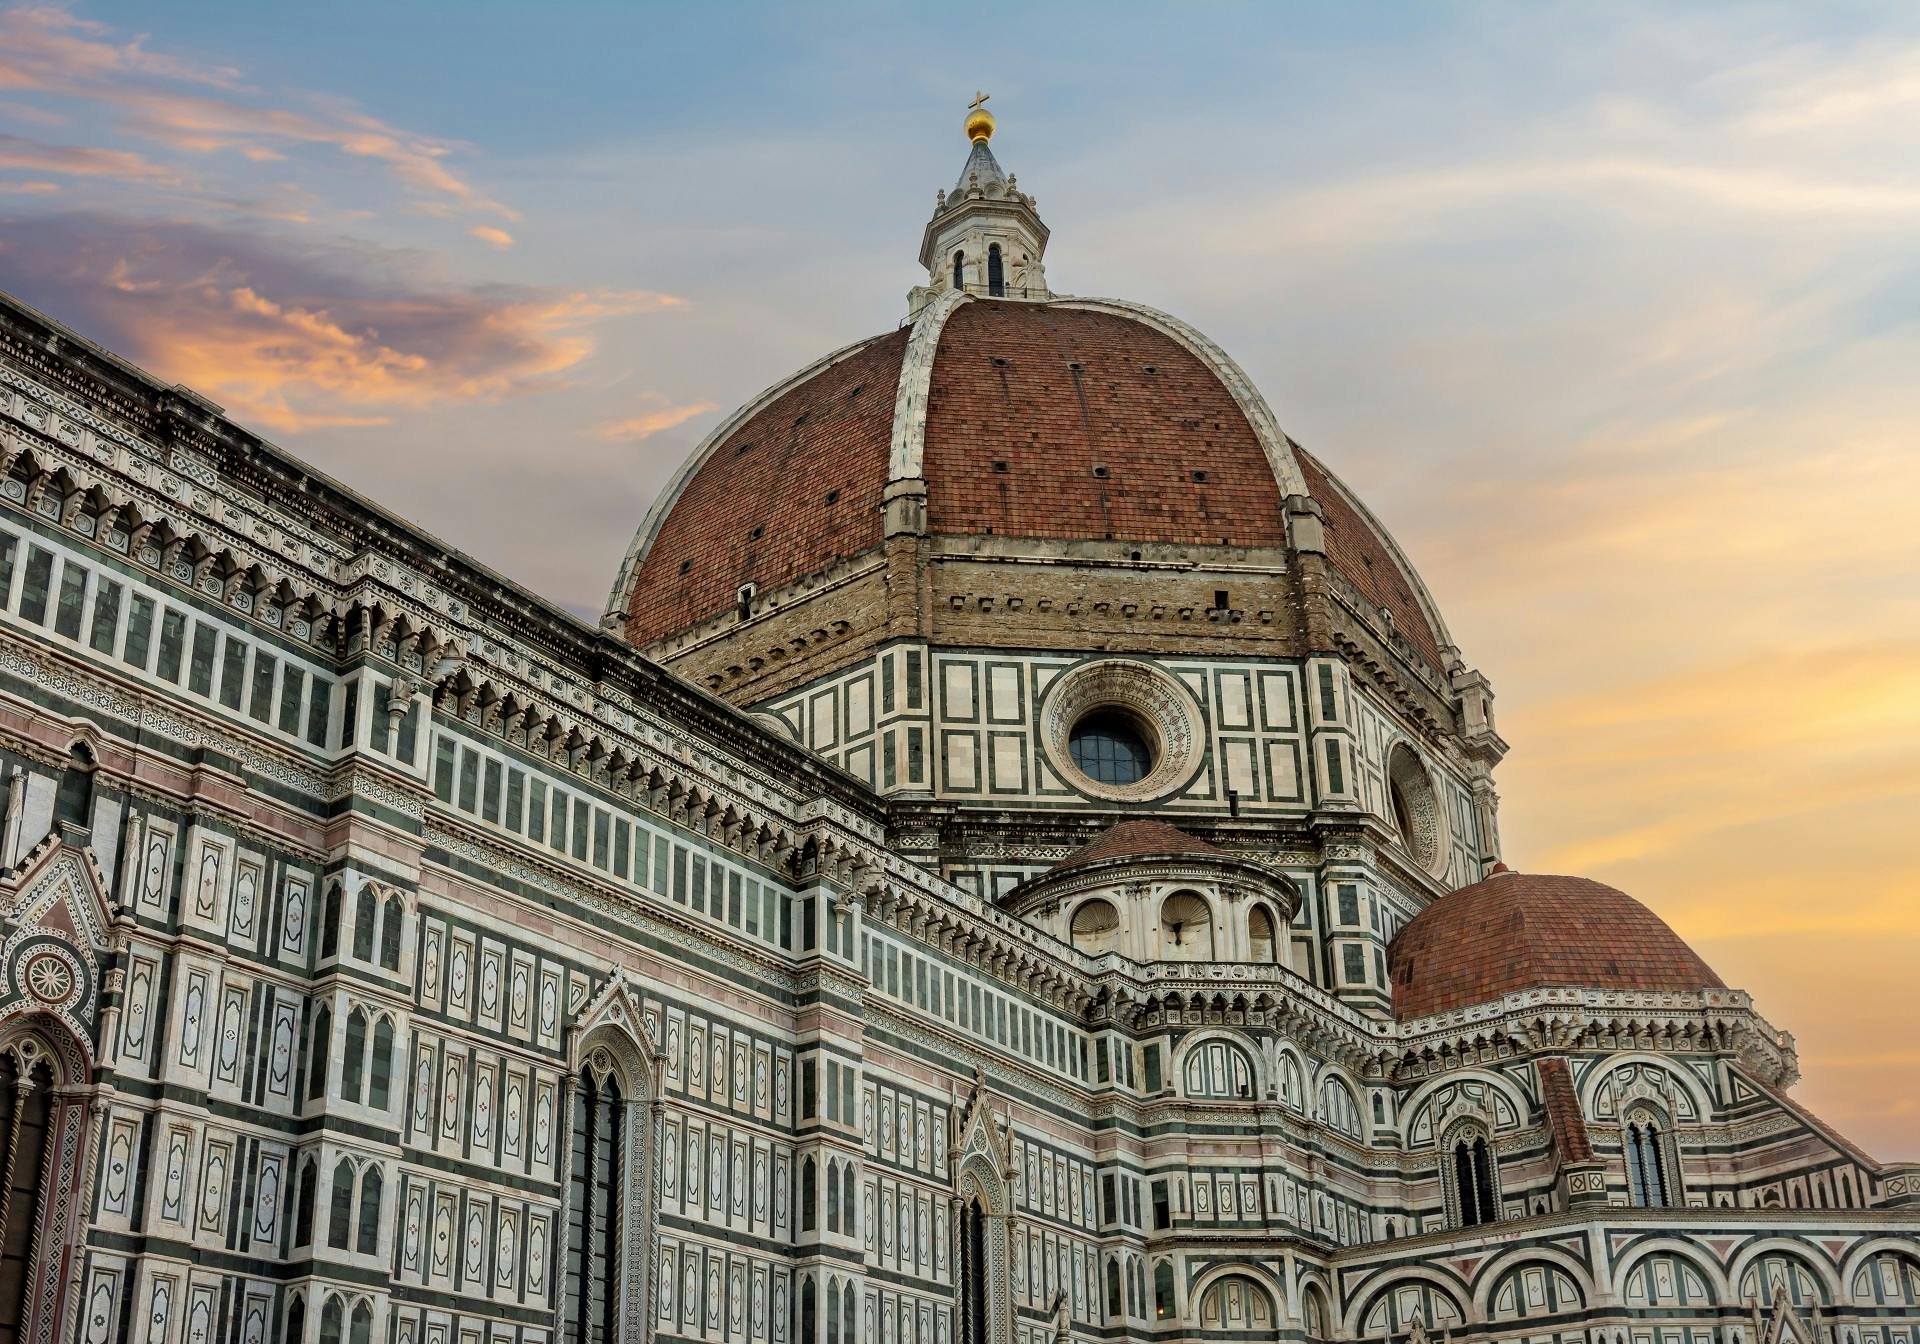 Exclusivo tour fuera de horario del Duomo de Florencia que incluye terrazas privadas